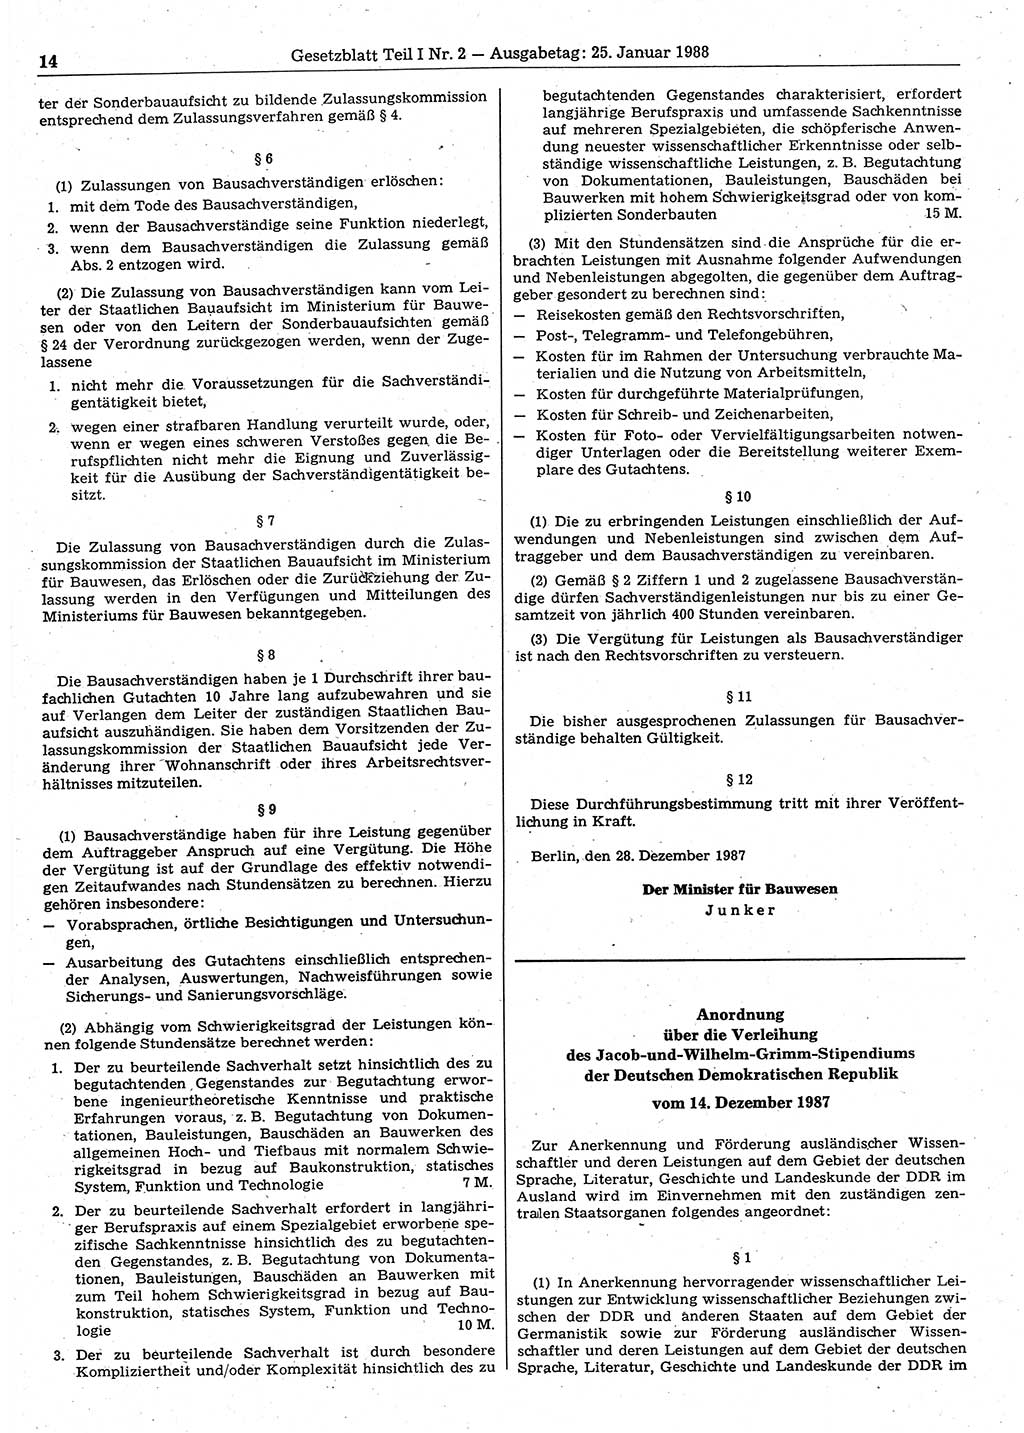 Gesetzblatt (GBl.) der Deutschen Demokratischen Republik (DDR) Teil Ⅰ 1988, Seite 14 (GBl. DDR Ⅰ 1988, S. 14)